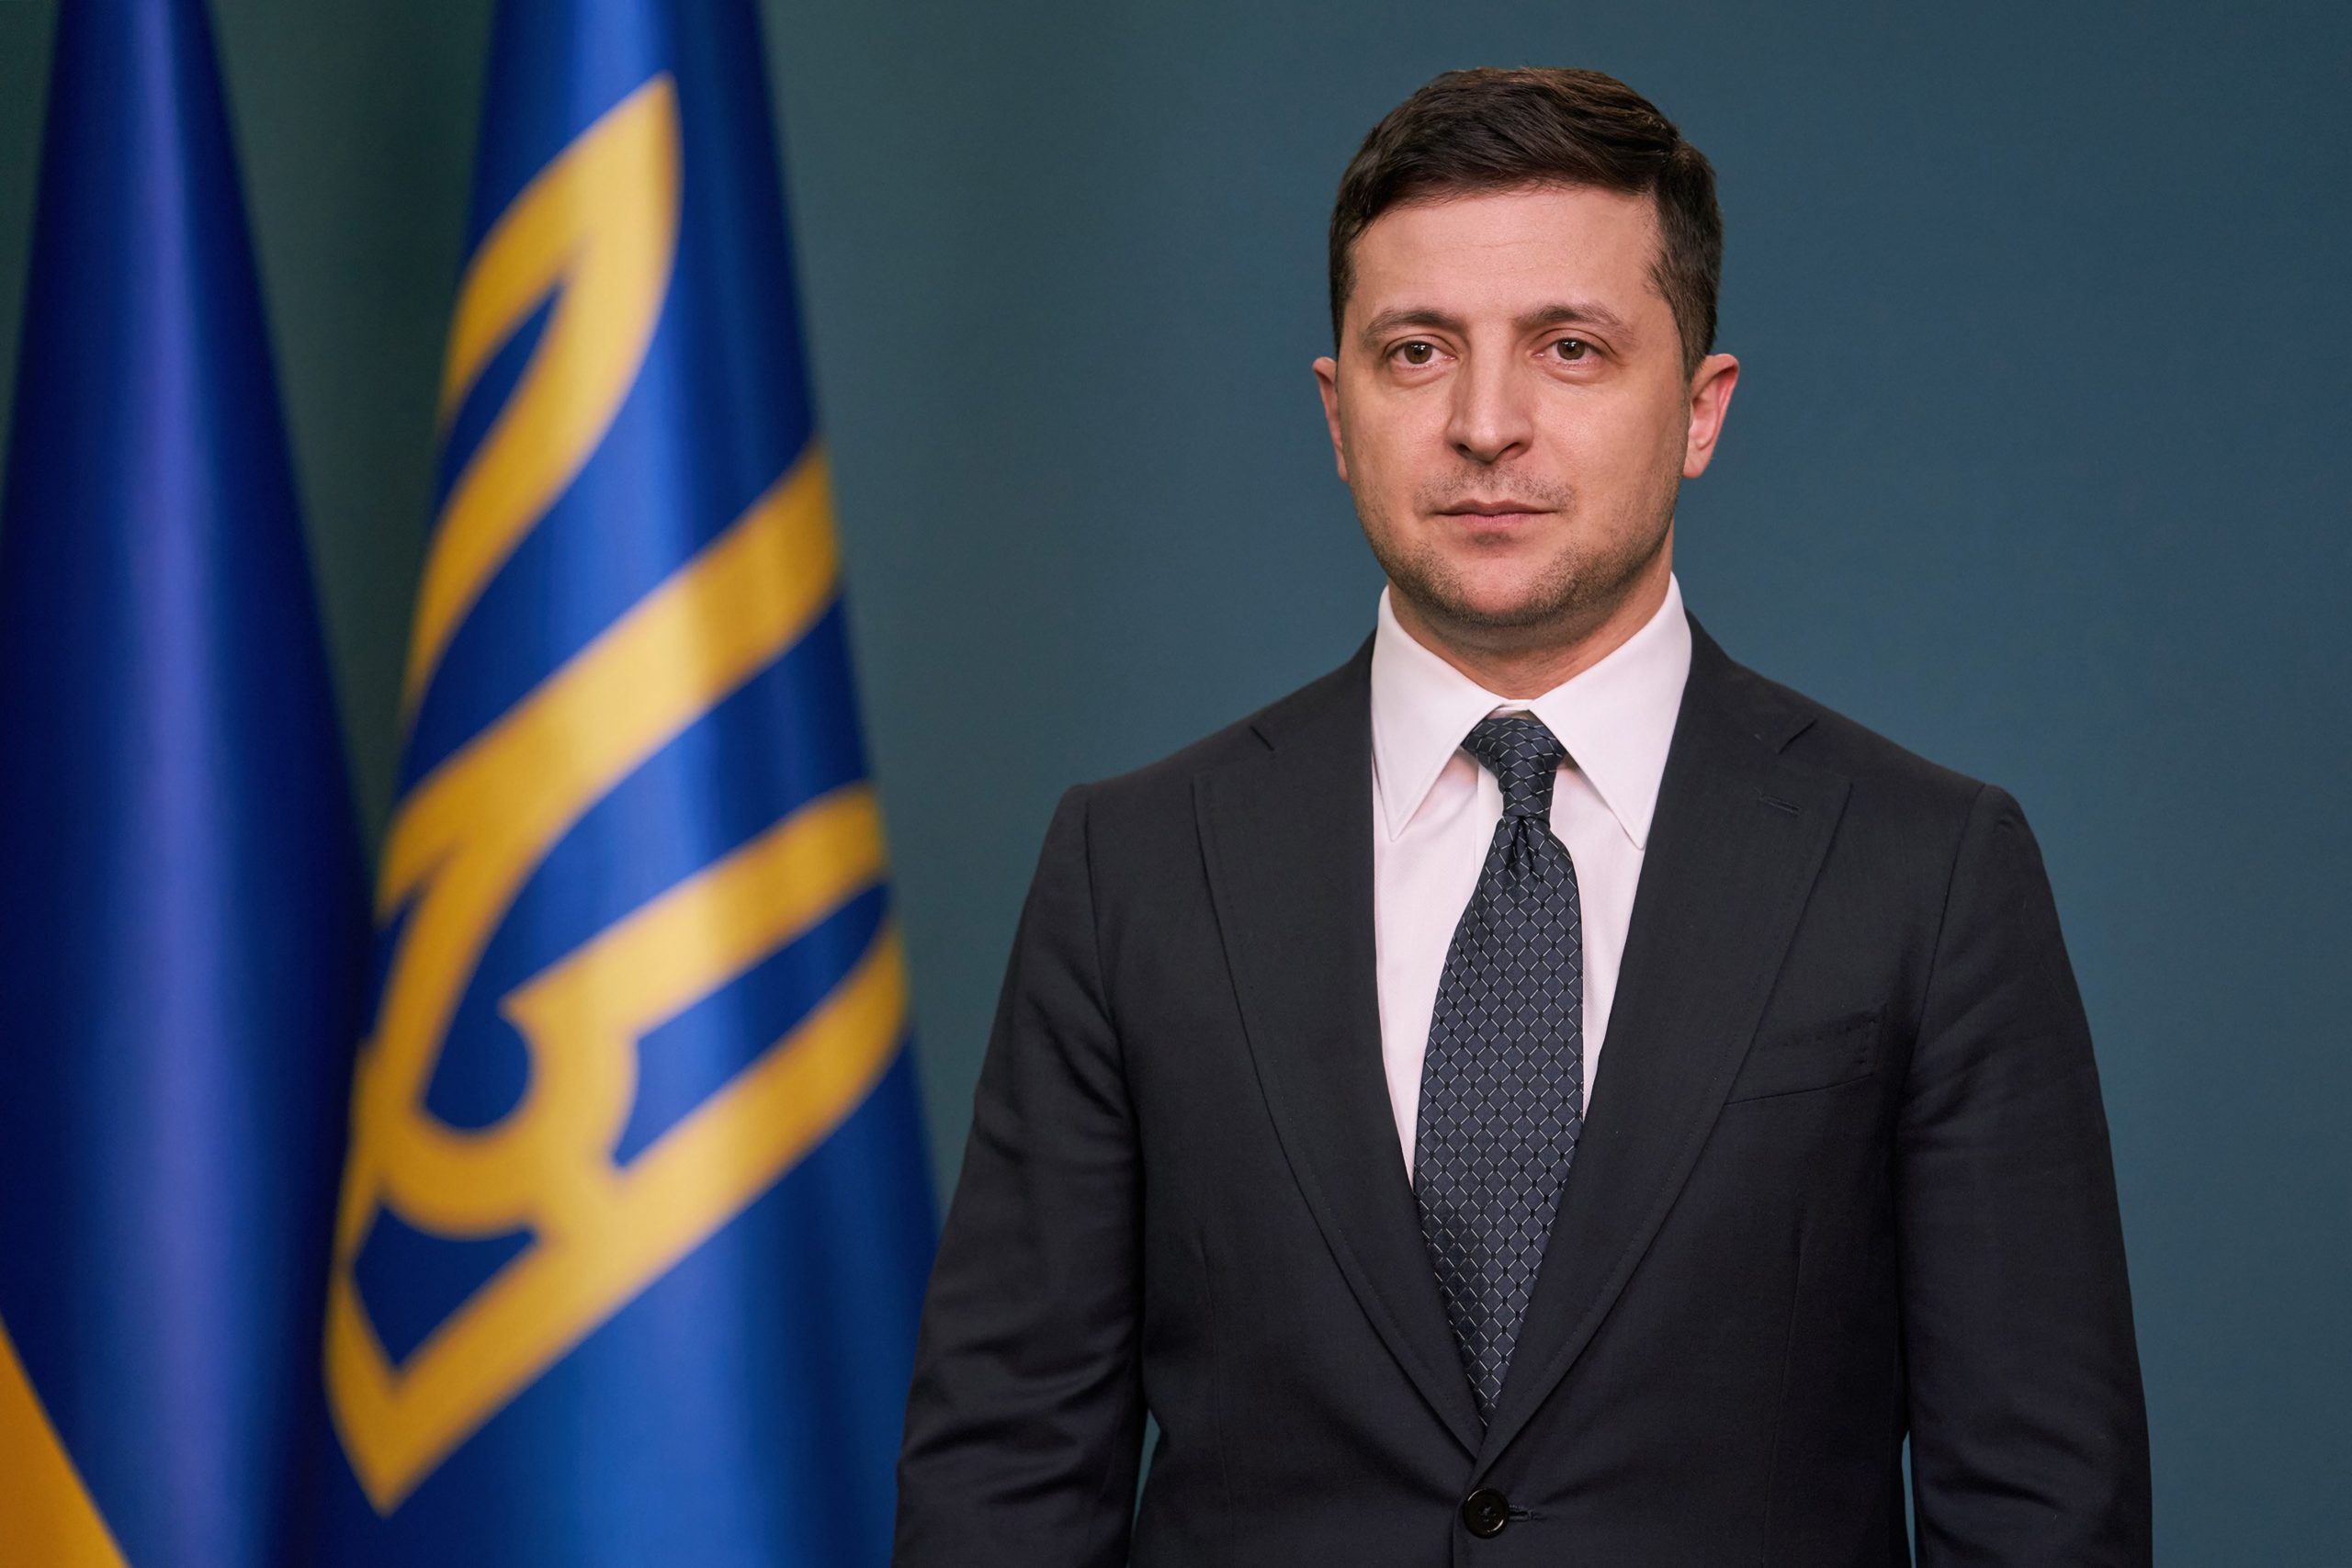 Ukraine President Zelenskyy